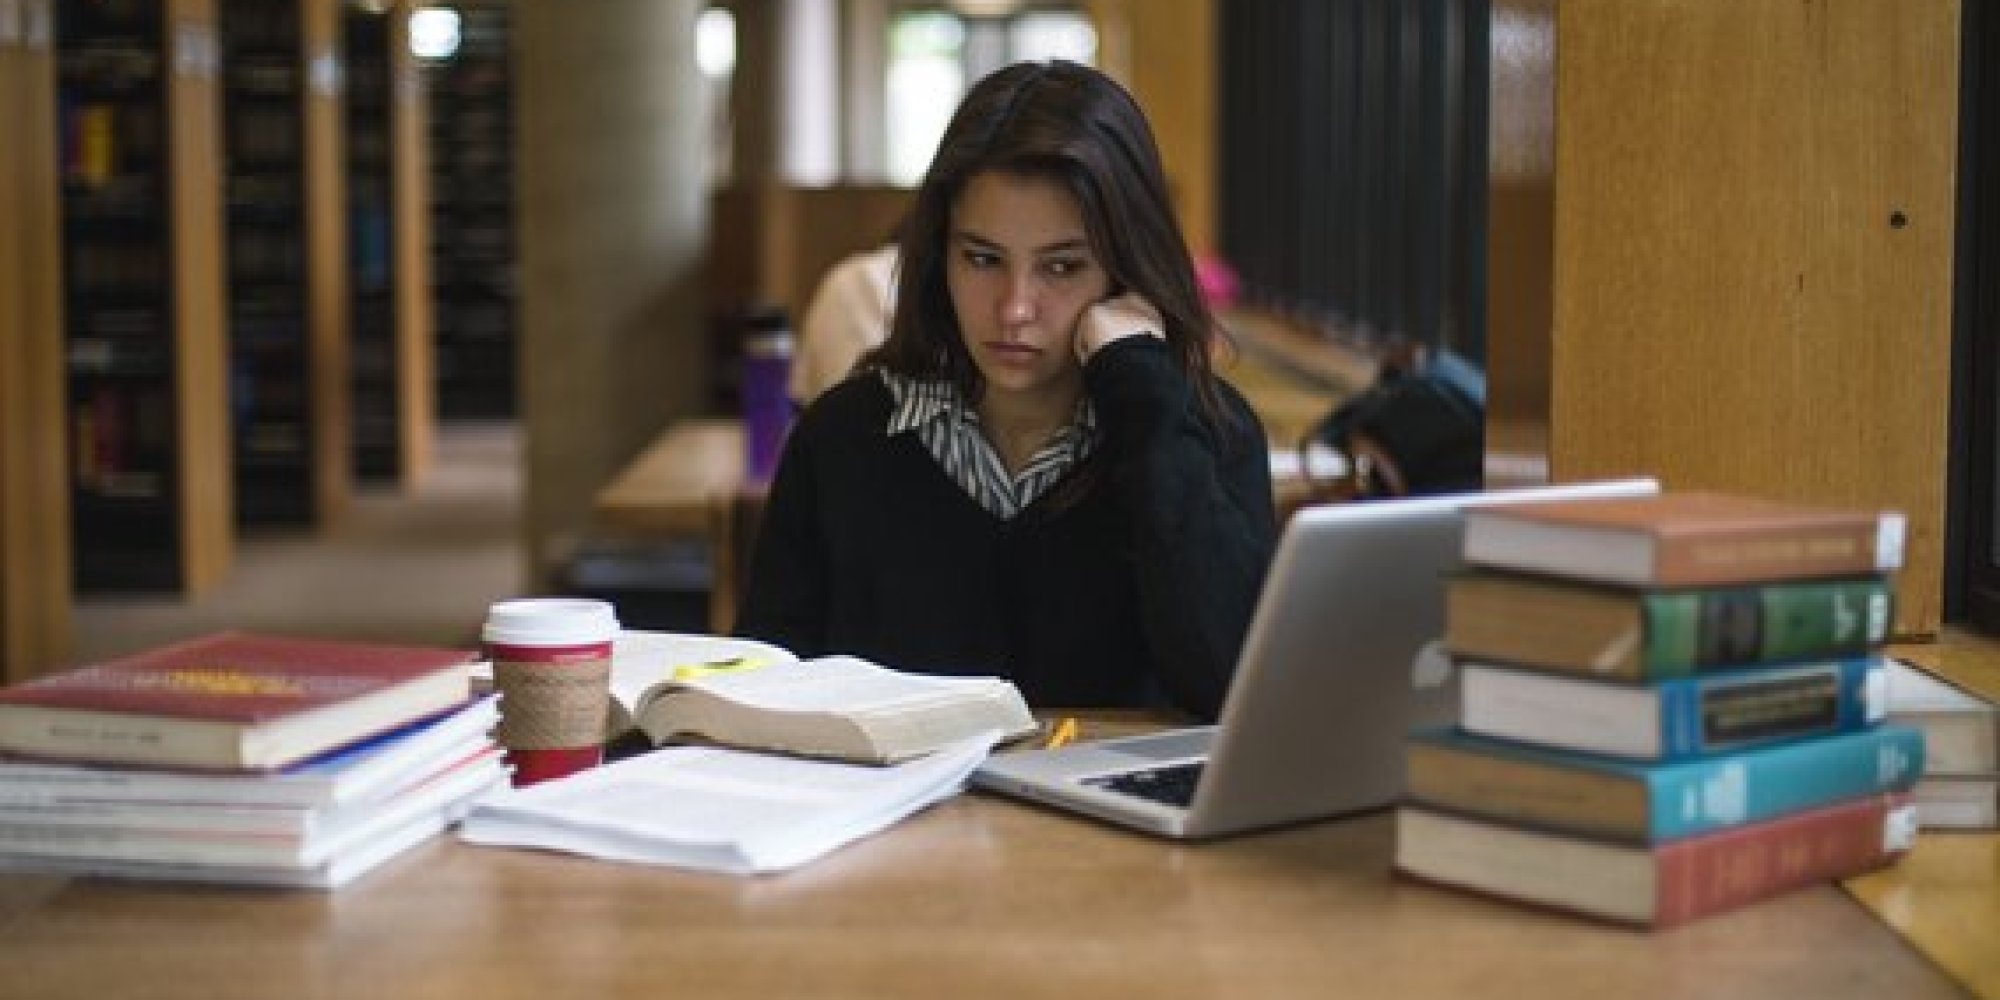 कोरोना संकटावर मात करीत ६० टक्के विद्यार्थी डिजिटल प्रवाहात ; ऑनलाईन शिक्षणाला मिळतोय प्रतिसाद